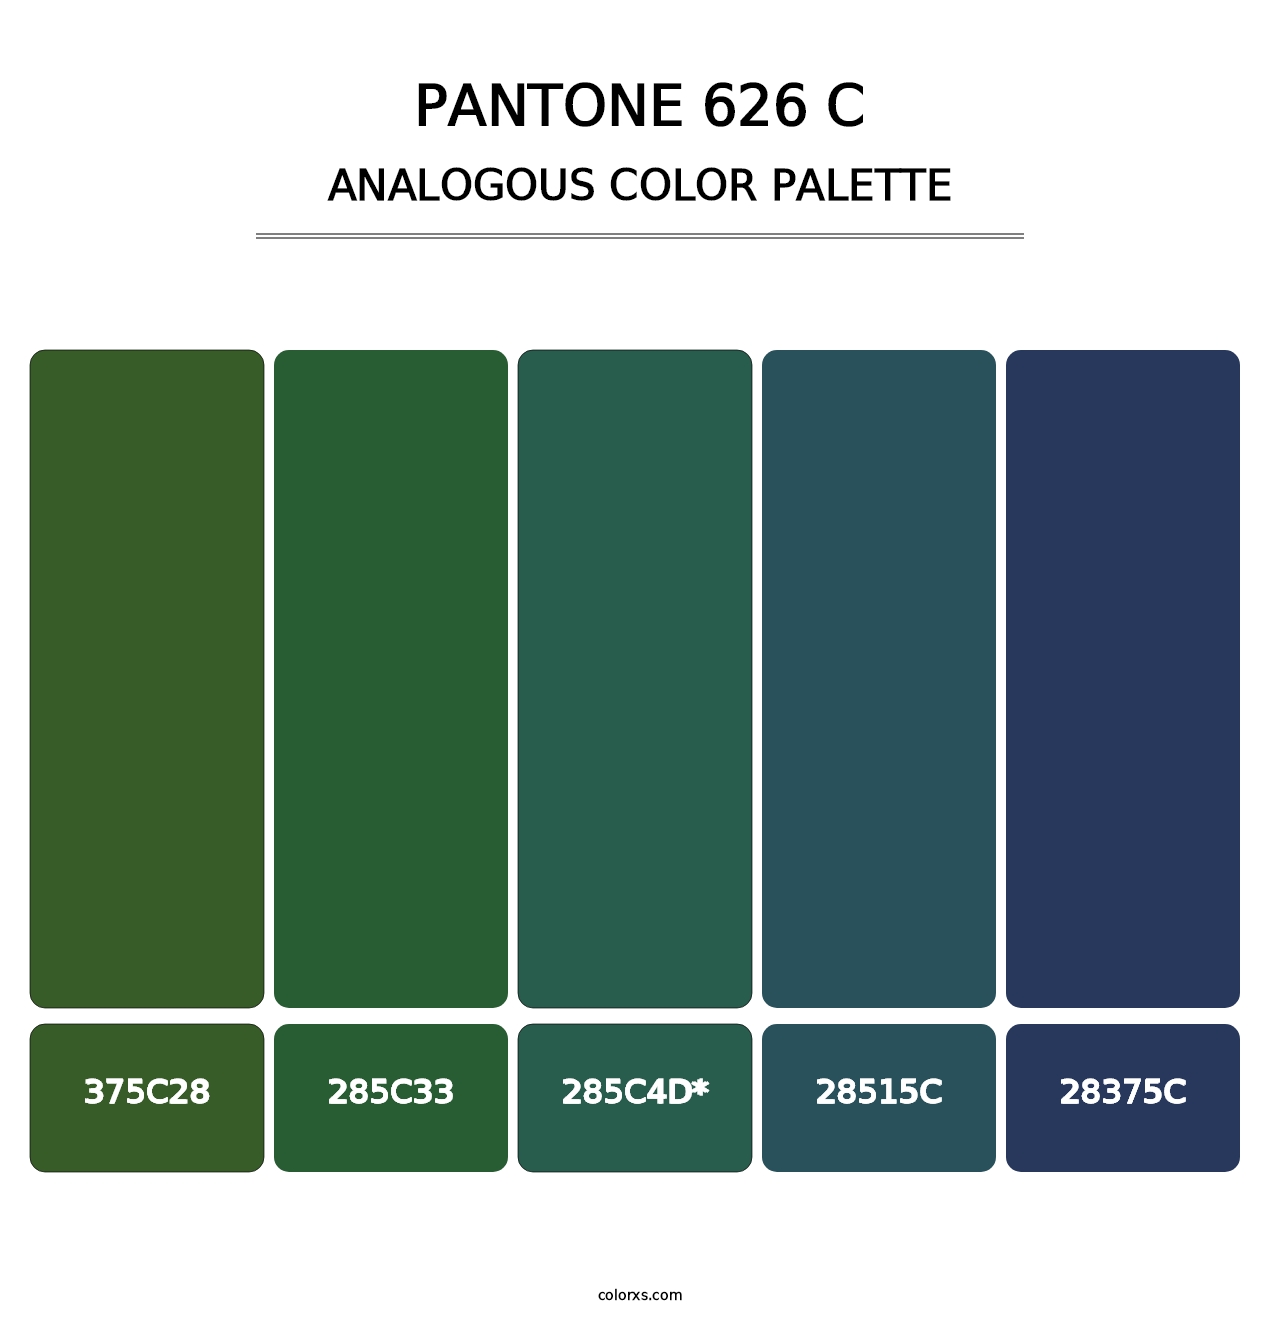 PANTONE 626 C - Analogous Color Palette